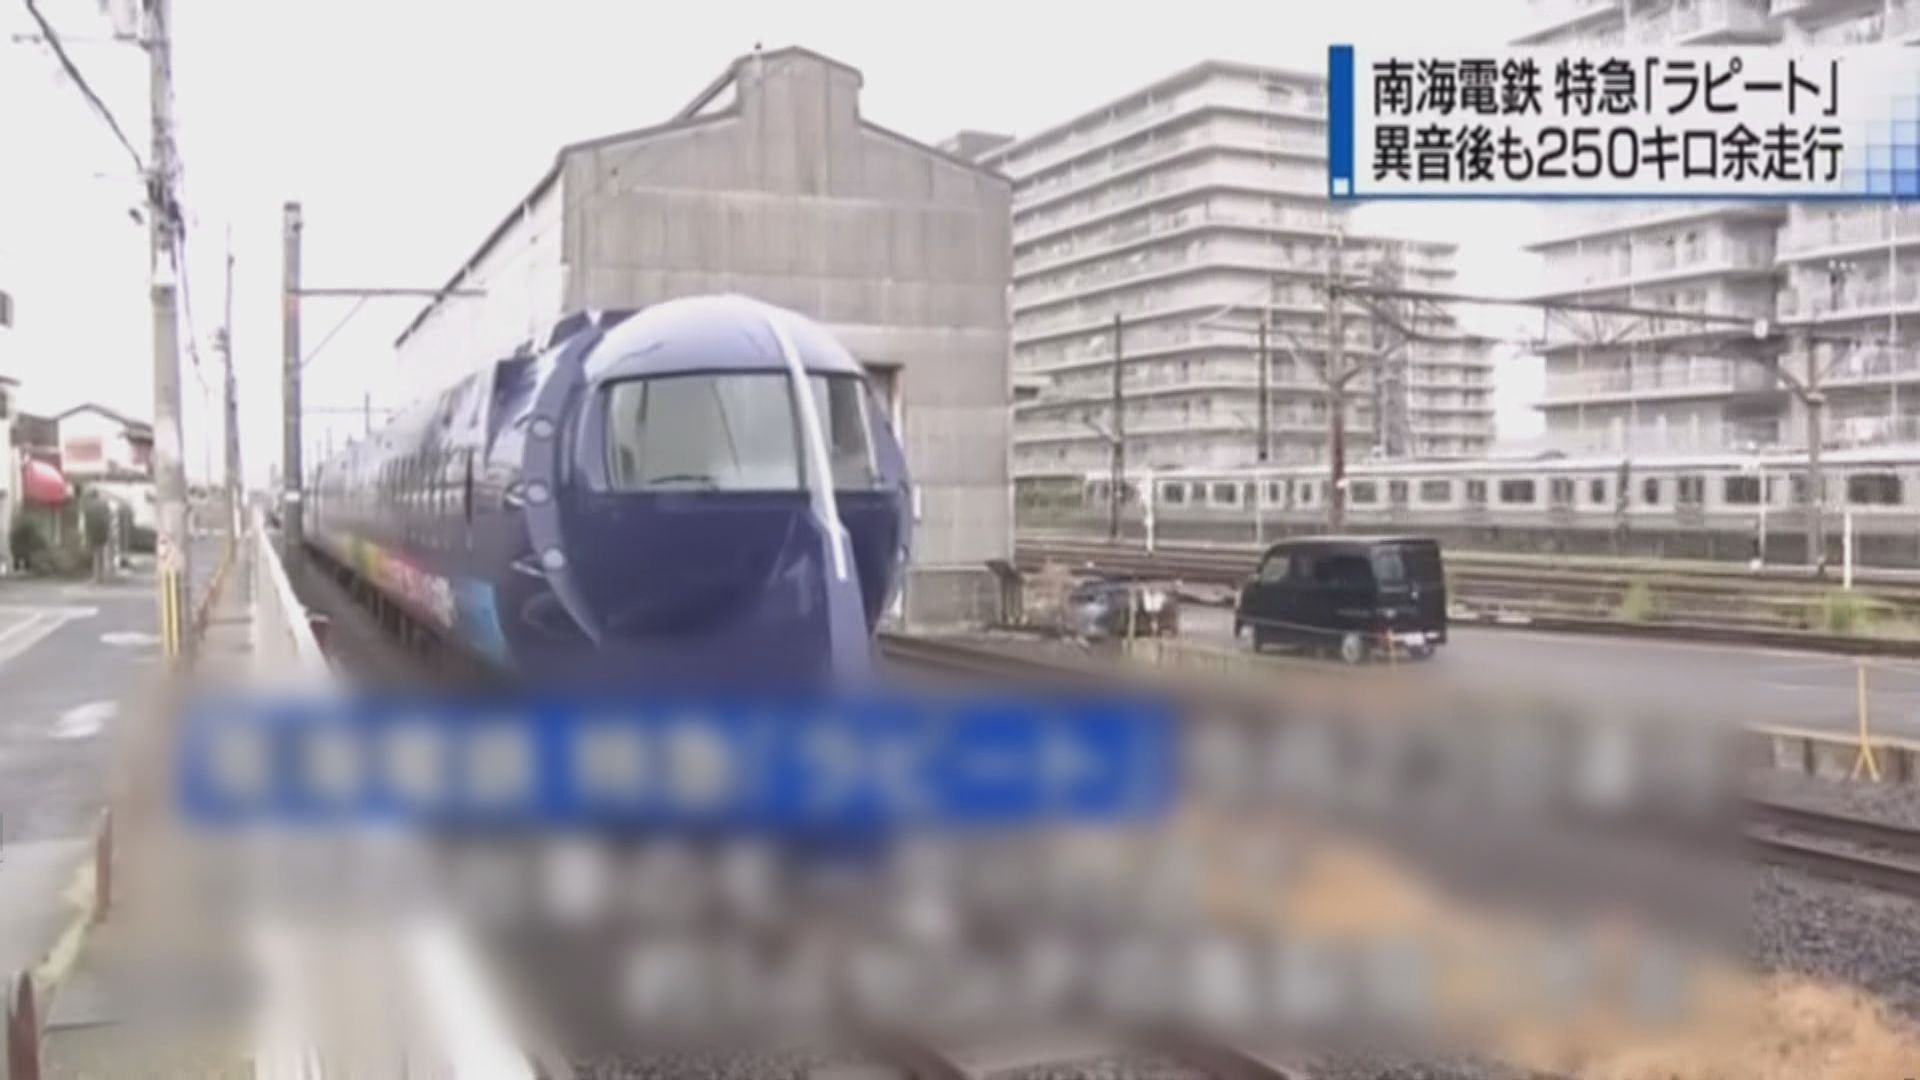 大阪列車轉向架龜裂後續行駛遭查